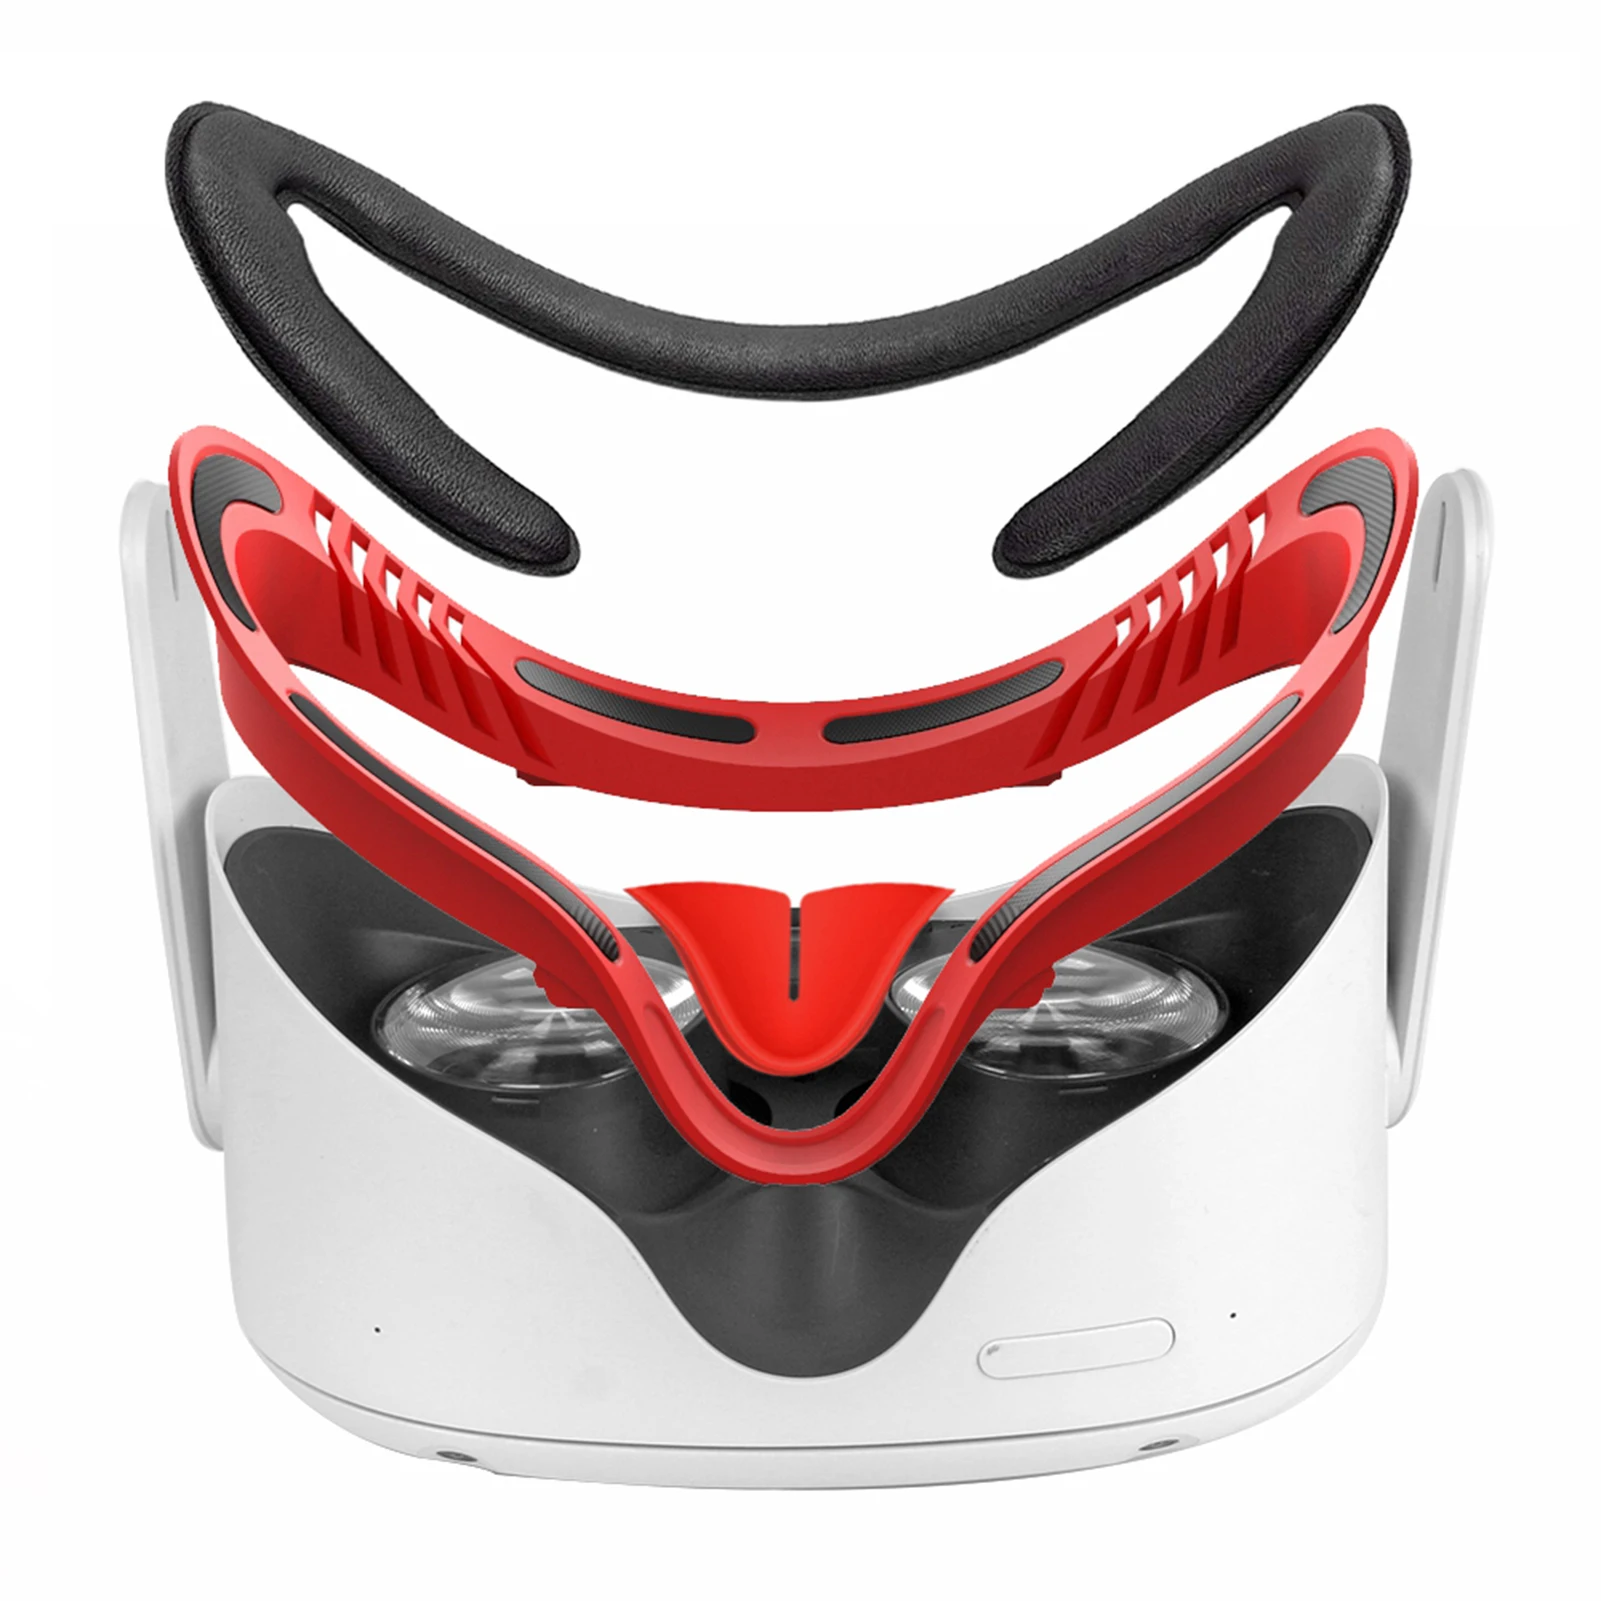 Hot Salg Blød Silikone Eye Mask Pad Cover I Sort Oculus Quest 2 Vr Briller Blød Anti-sved Silikone Vr Briller Tilbehør Tilbud < Bærbare video ~ www.slaegtsbog.dk